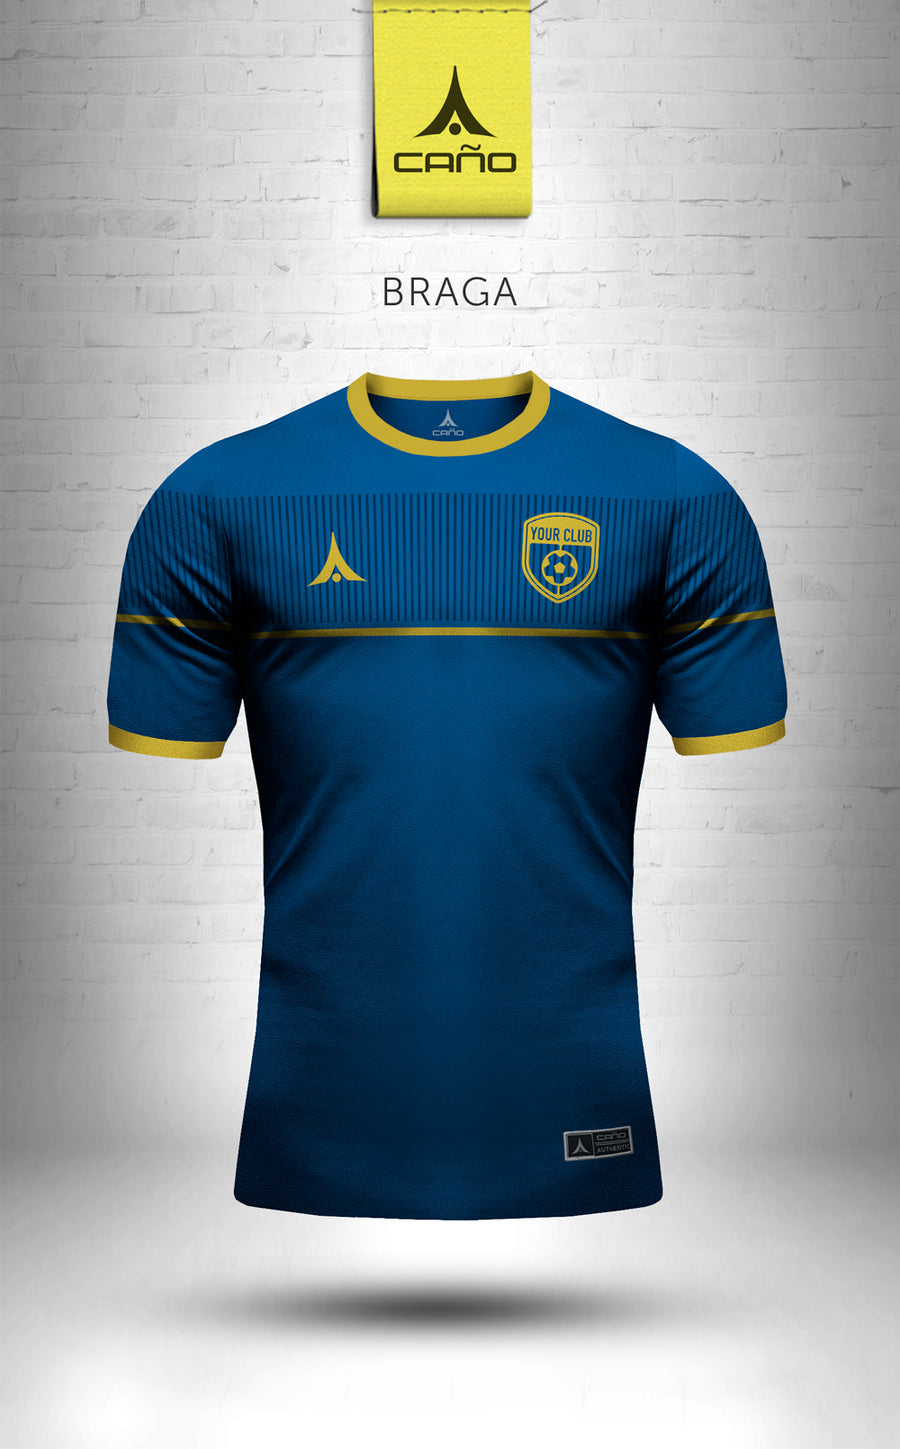 Braga in navy/gold